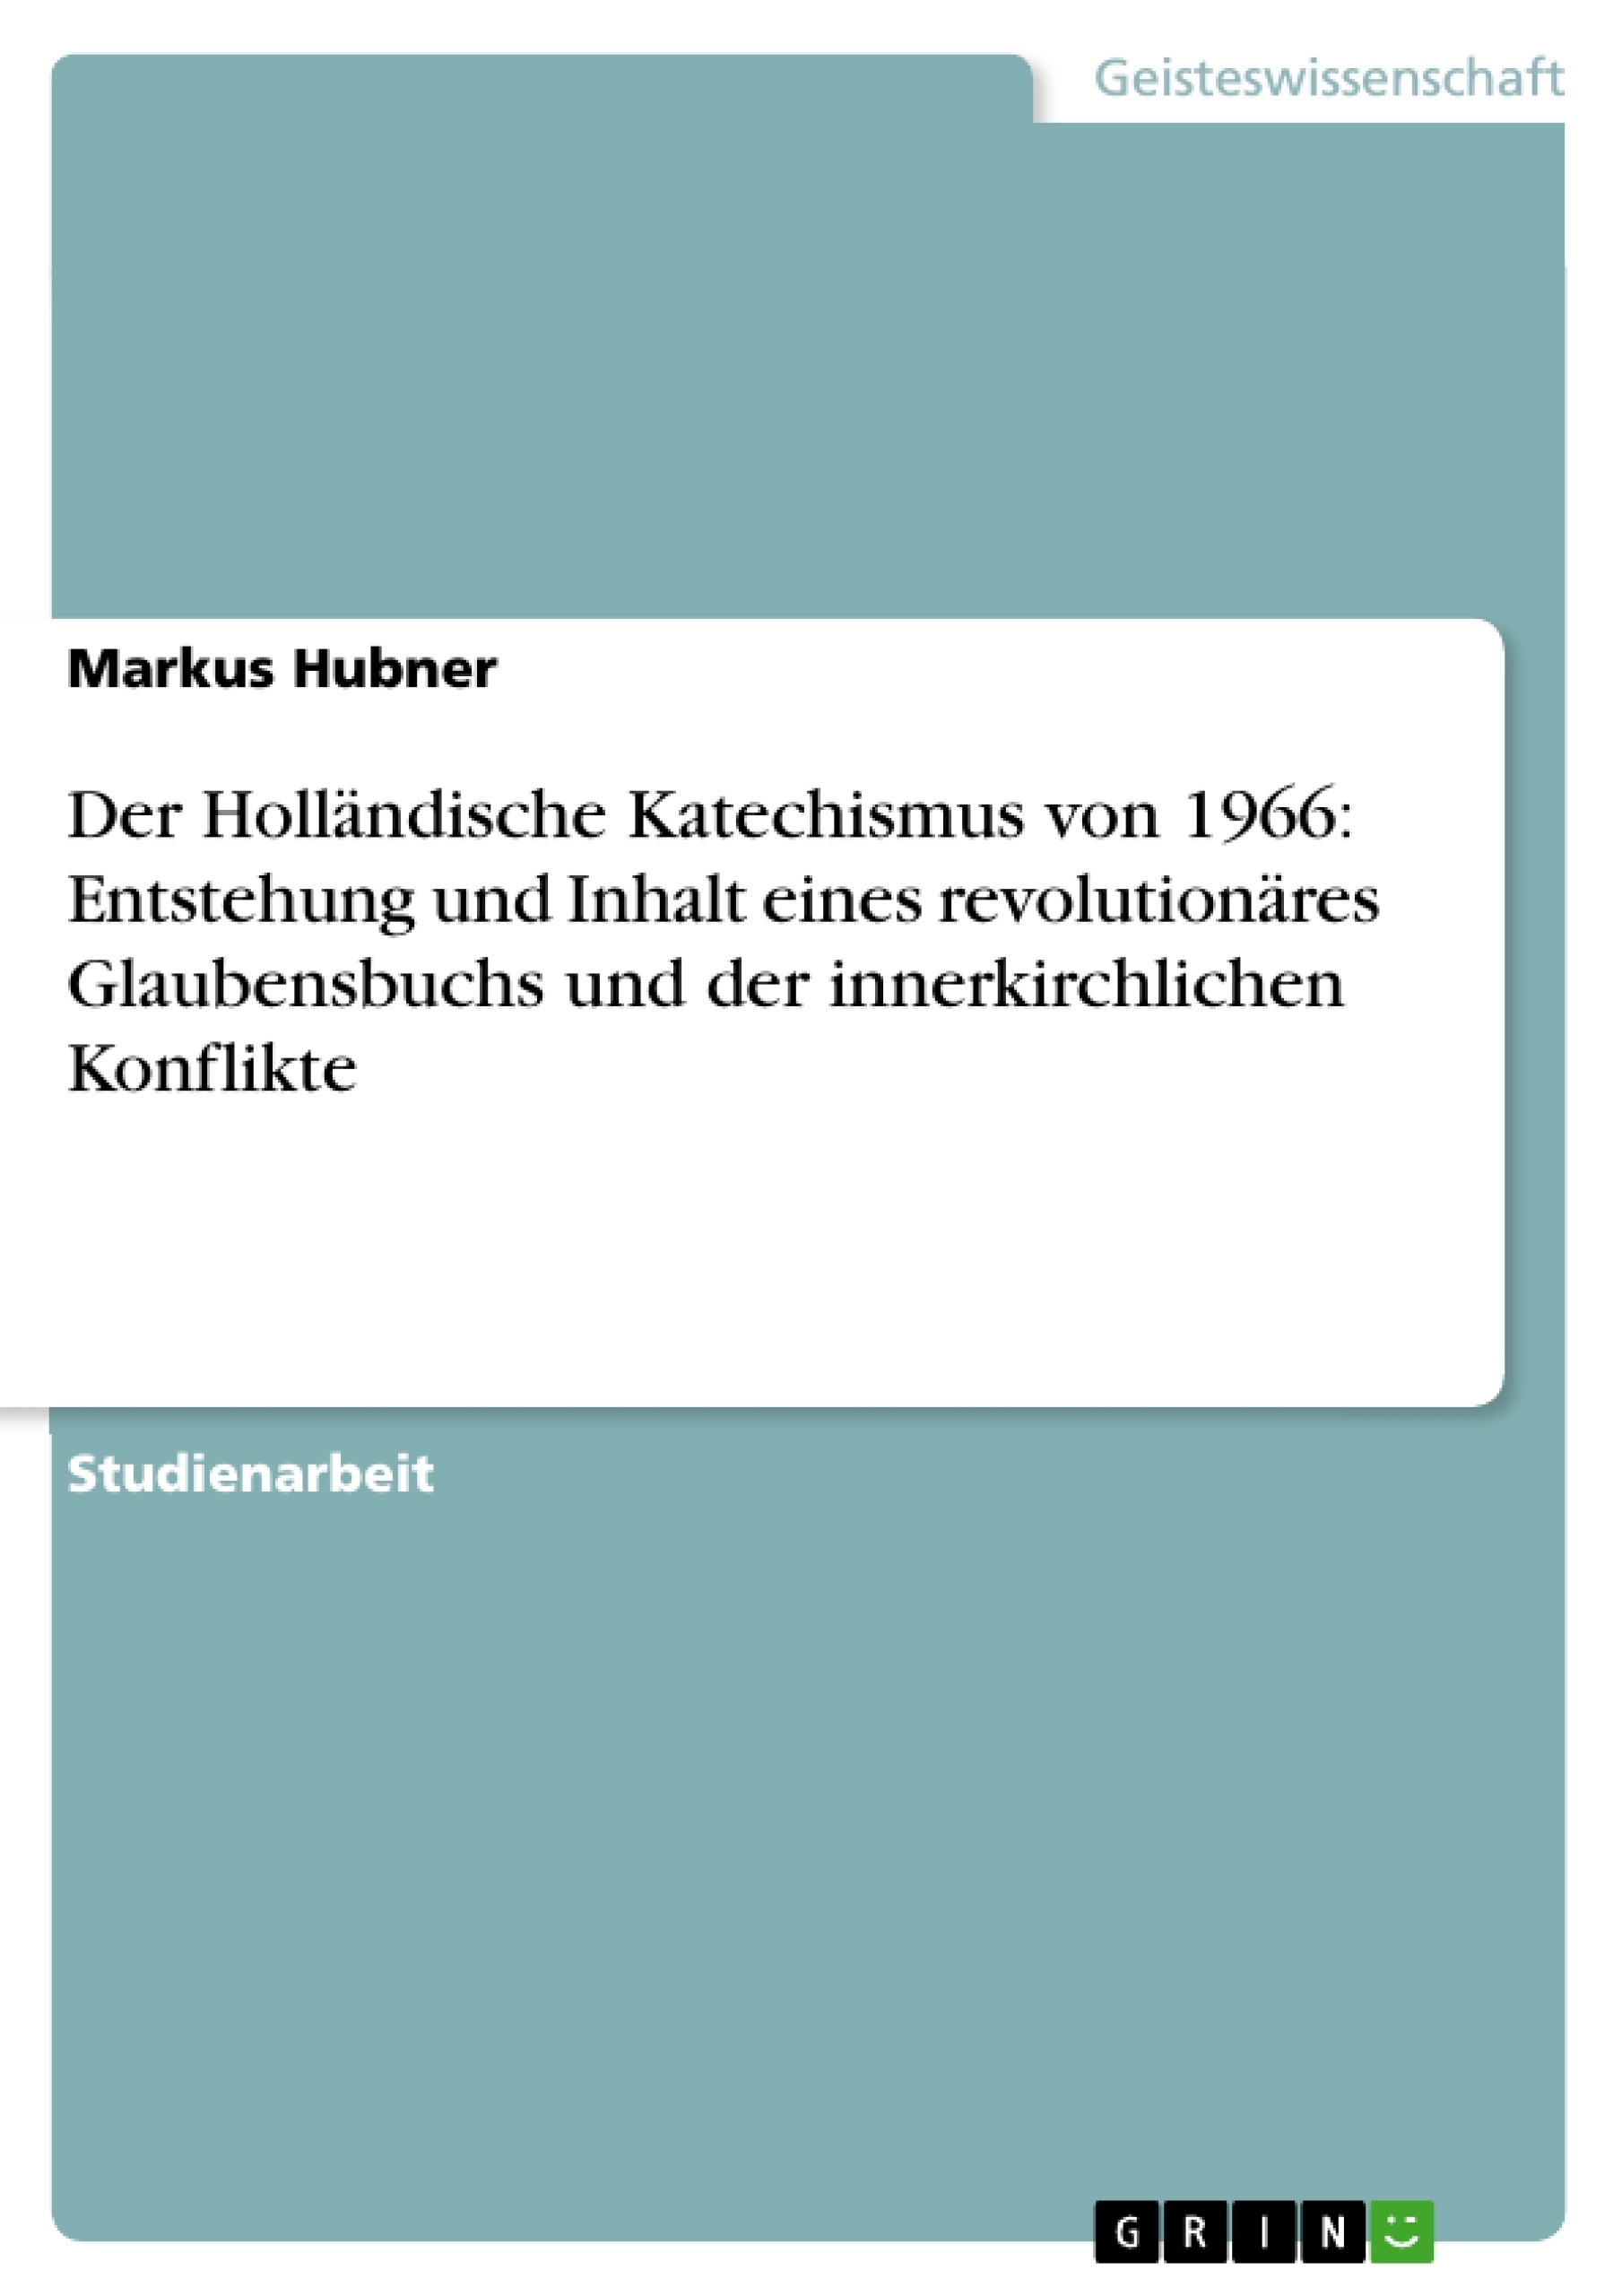 Título: Der Holländische Katechismus von 1966: Entstehung und Inhalt eines revolutionäres Glaubensbuchs und der innerkirchlichen Konflikte